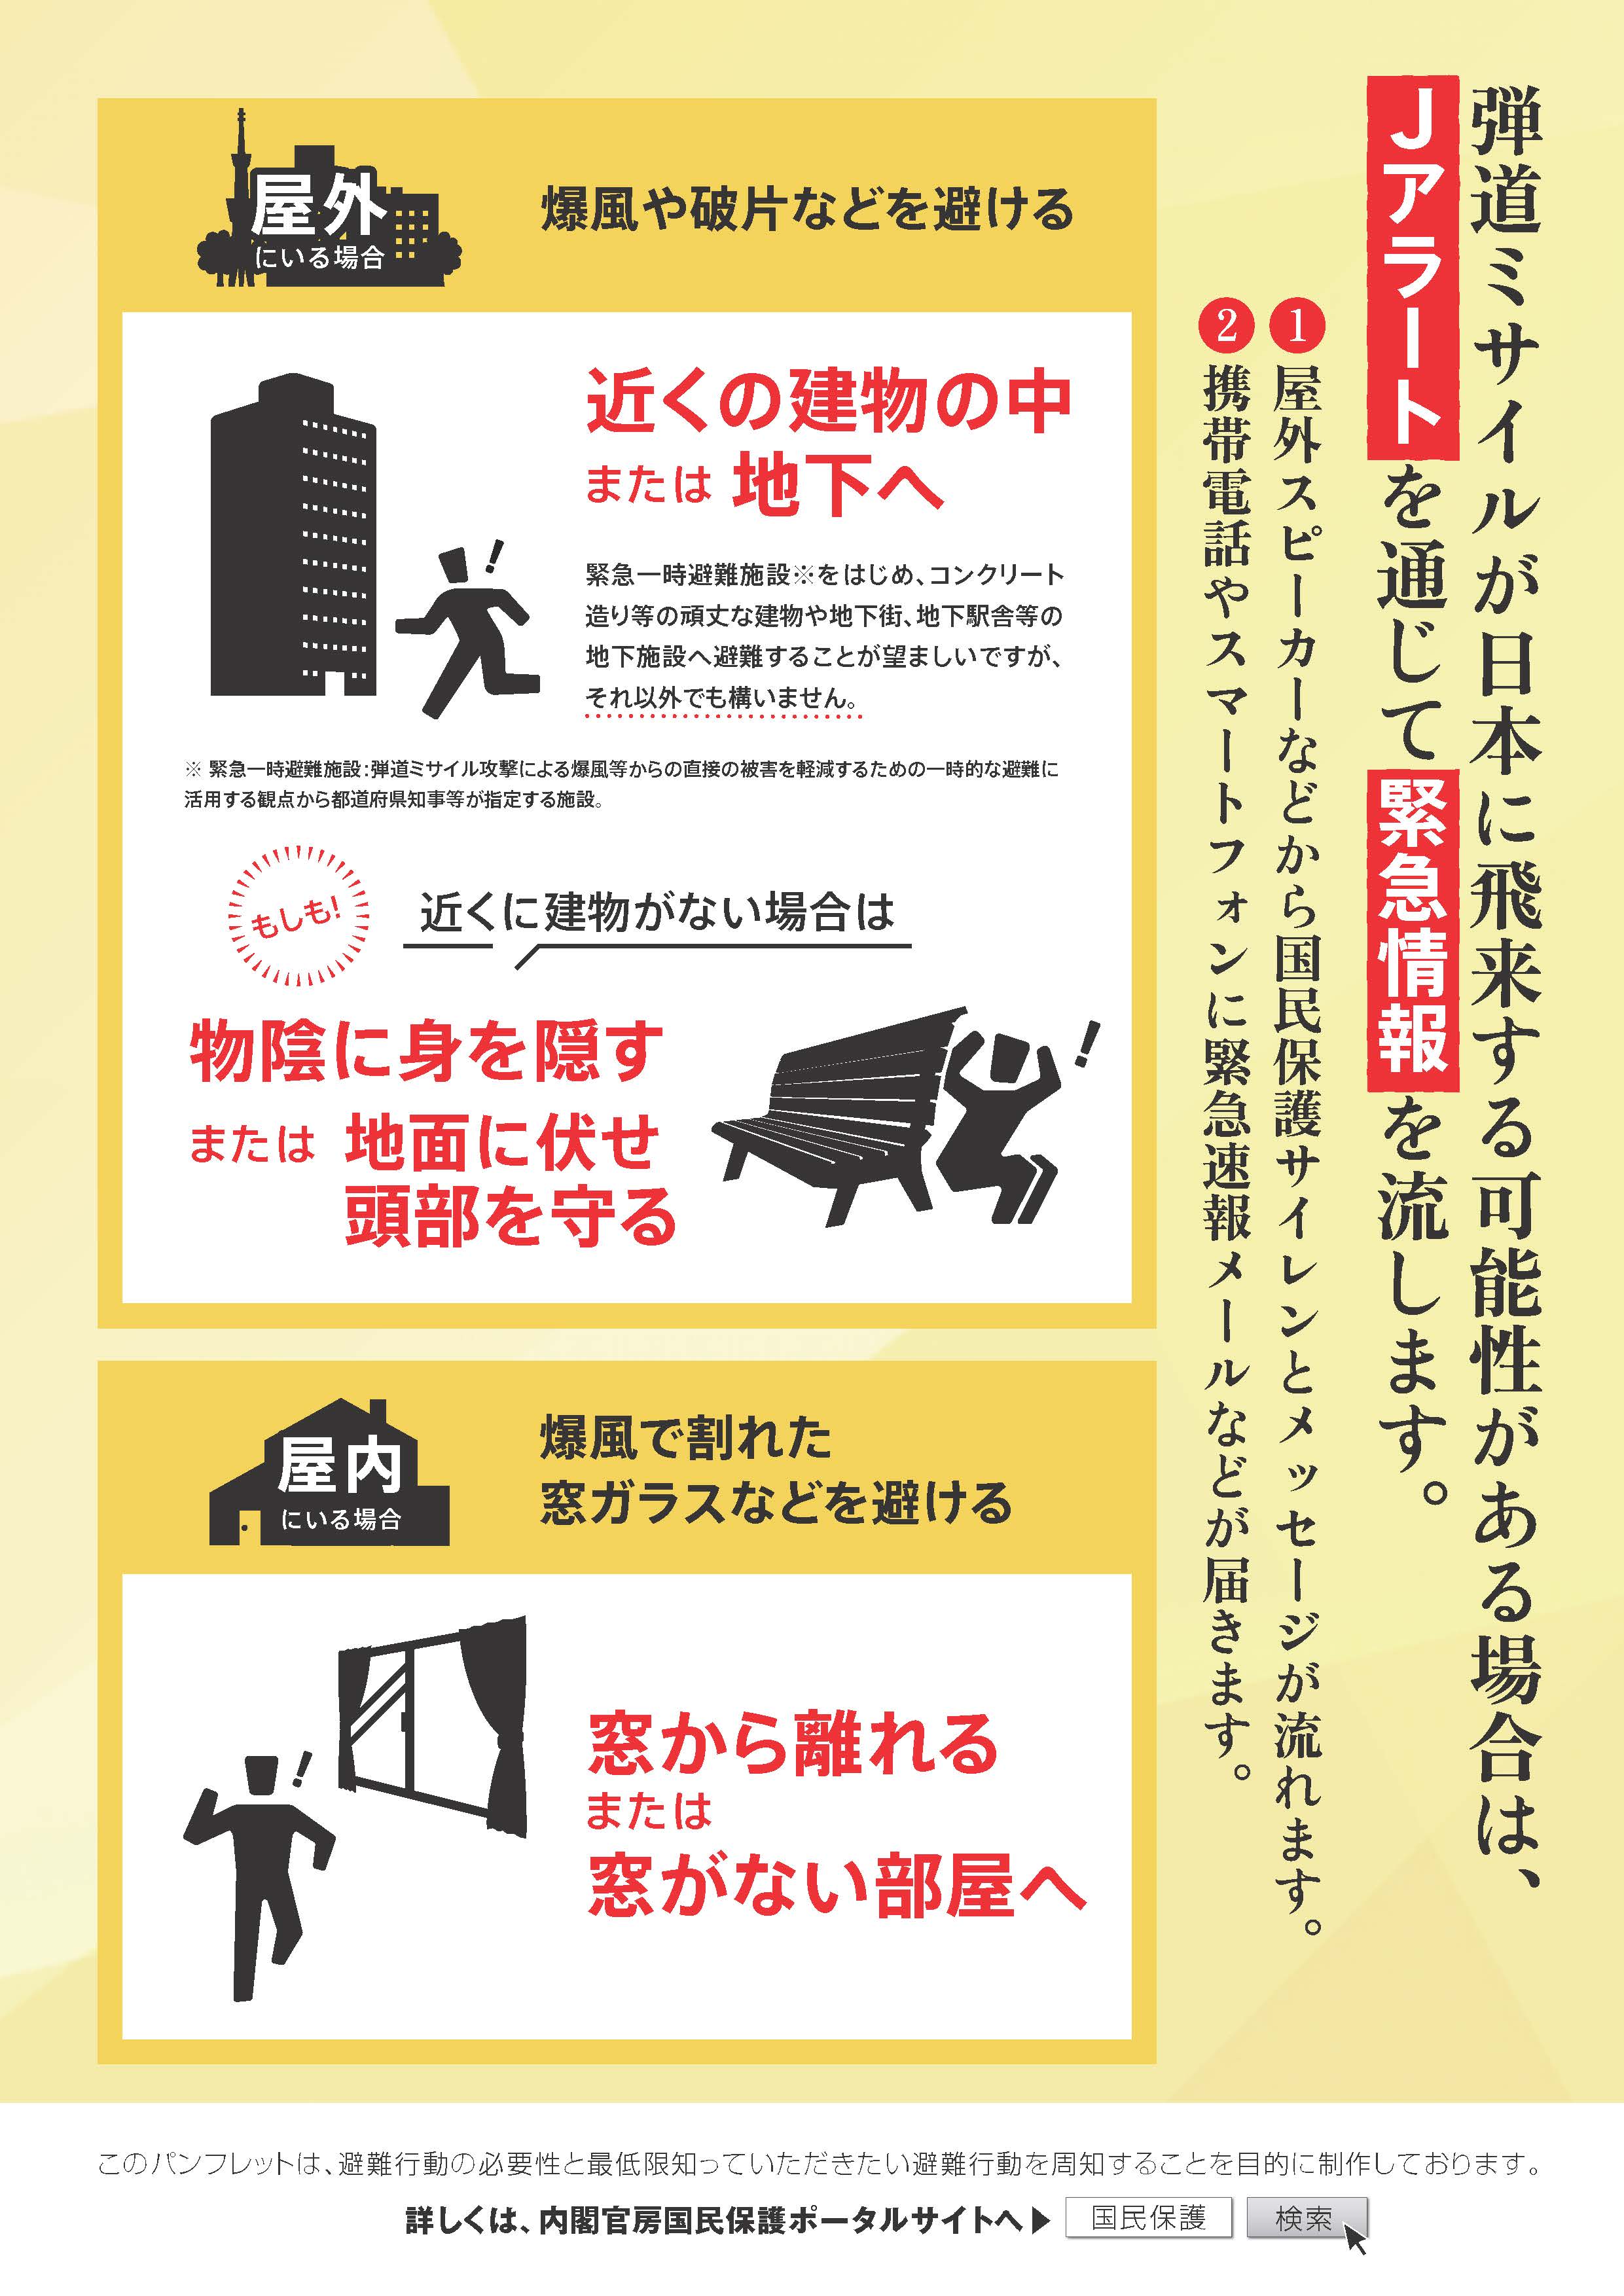 爆風や破片などから身を守るため、状況に応じた避難行動をとることが大切です。弾道ミサイルが日本に飛来する可能性がある場合には、Jアラートを通じて緊急情報を流します。